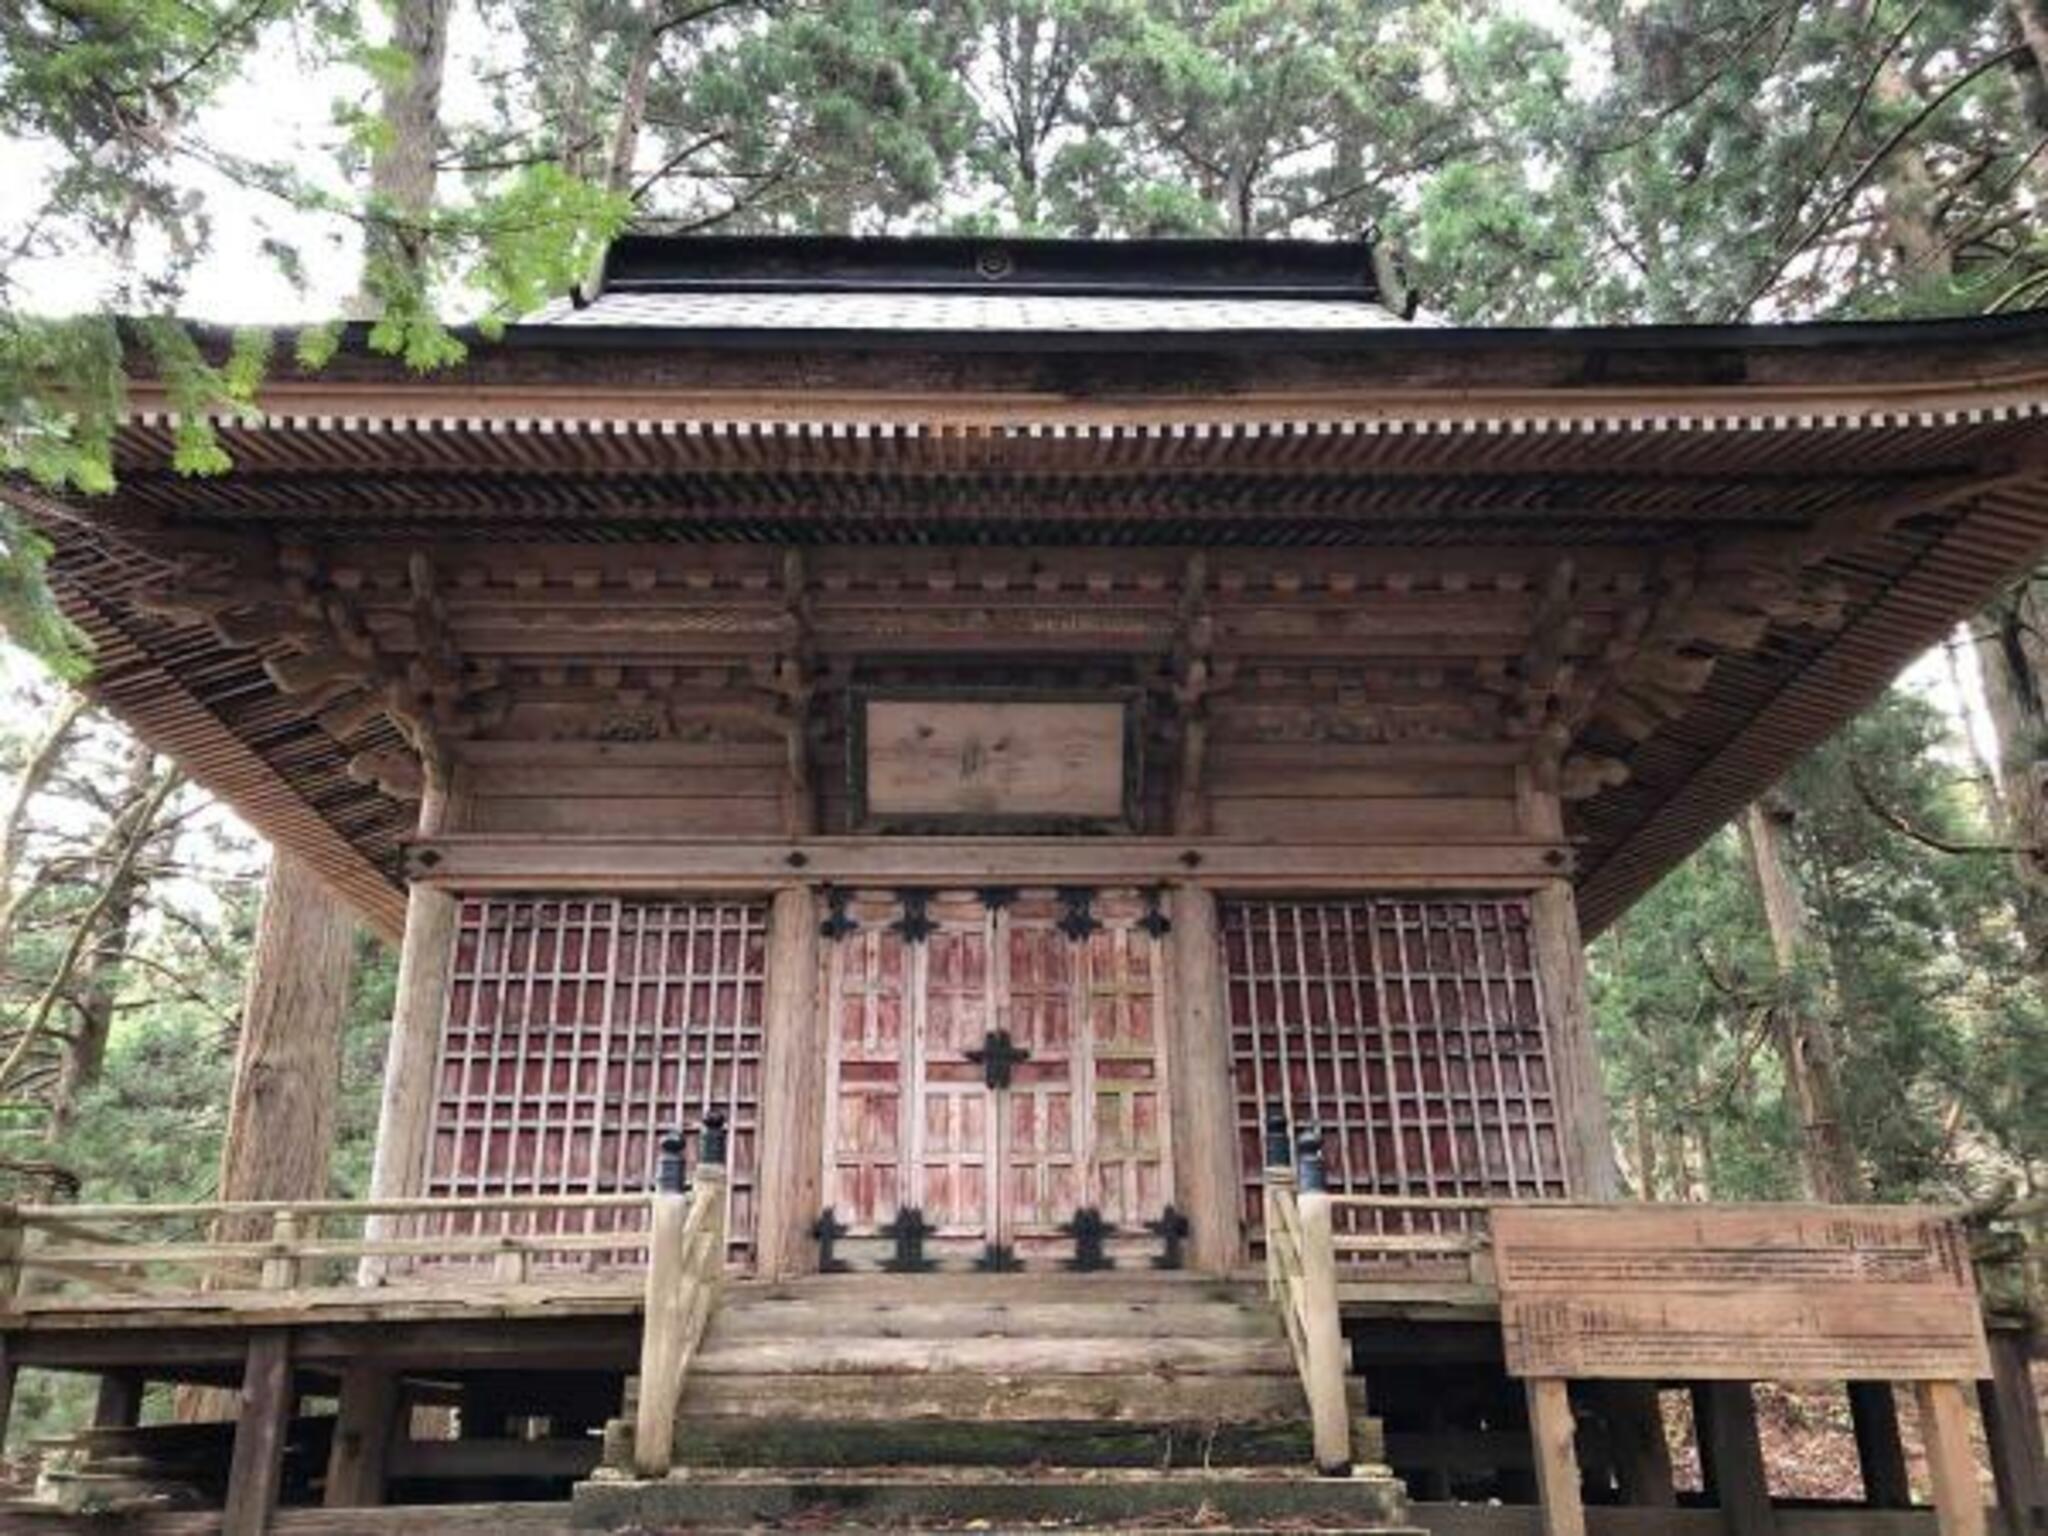 金峰神社(蓮池観音) - 仙北市田沢湖梅沢/神社 | Yahoo!マップ